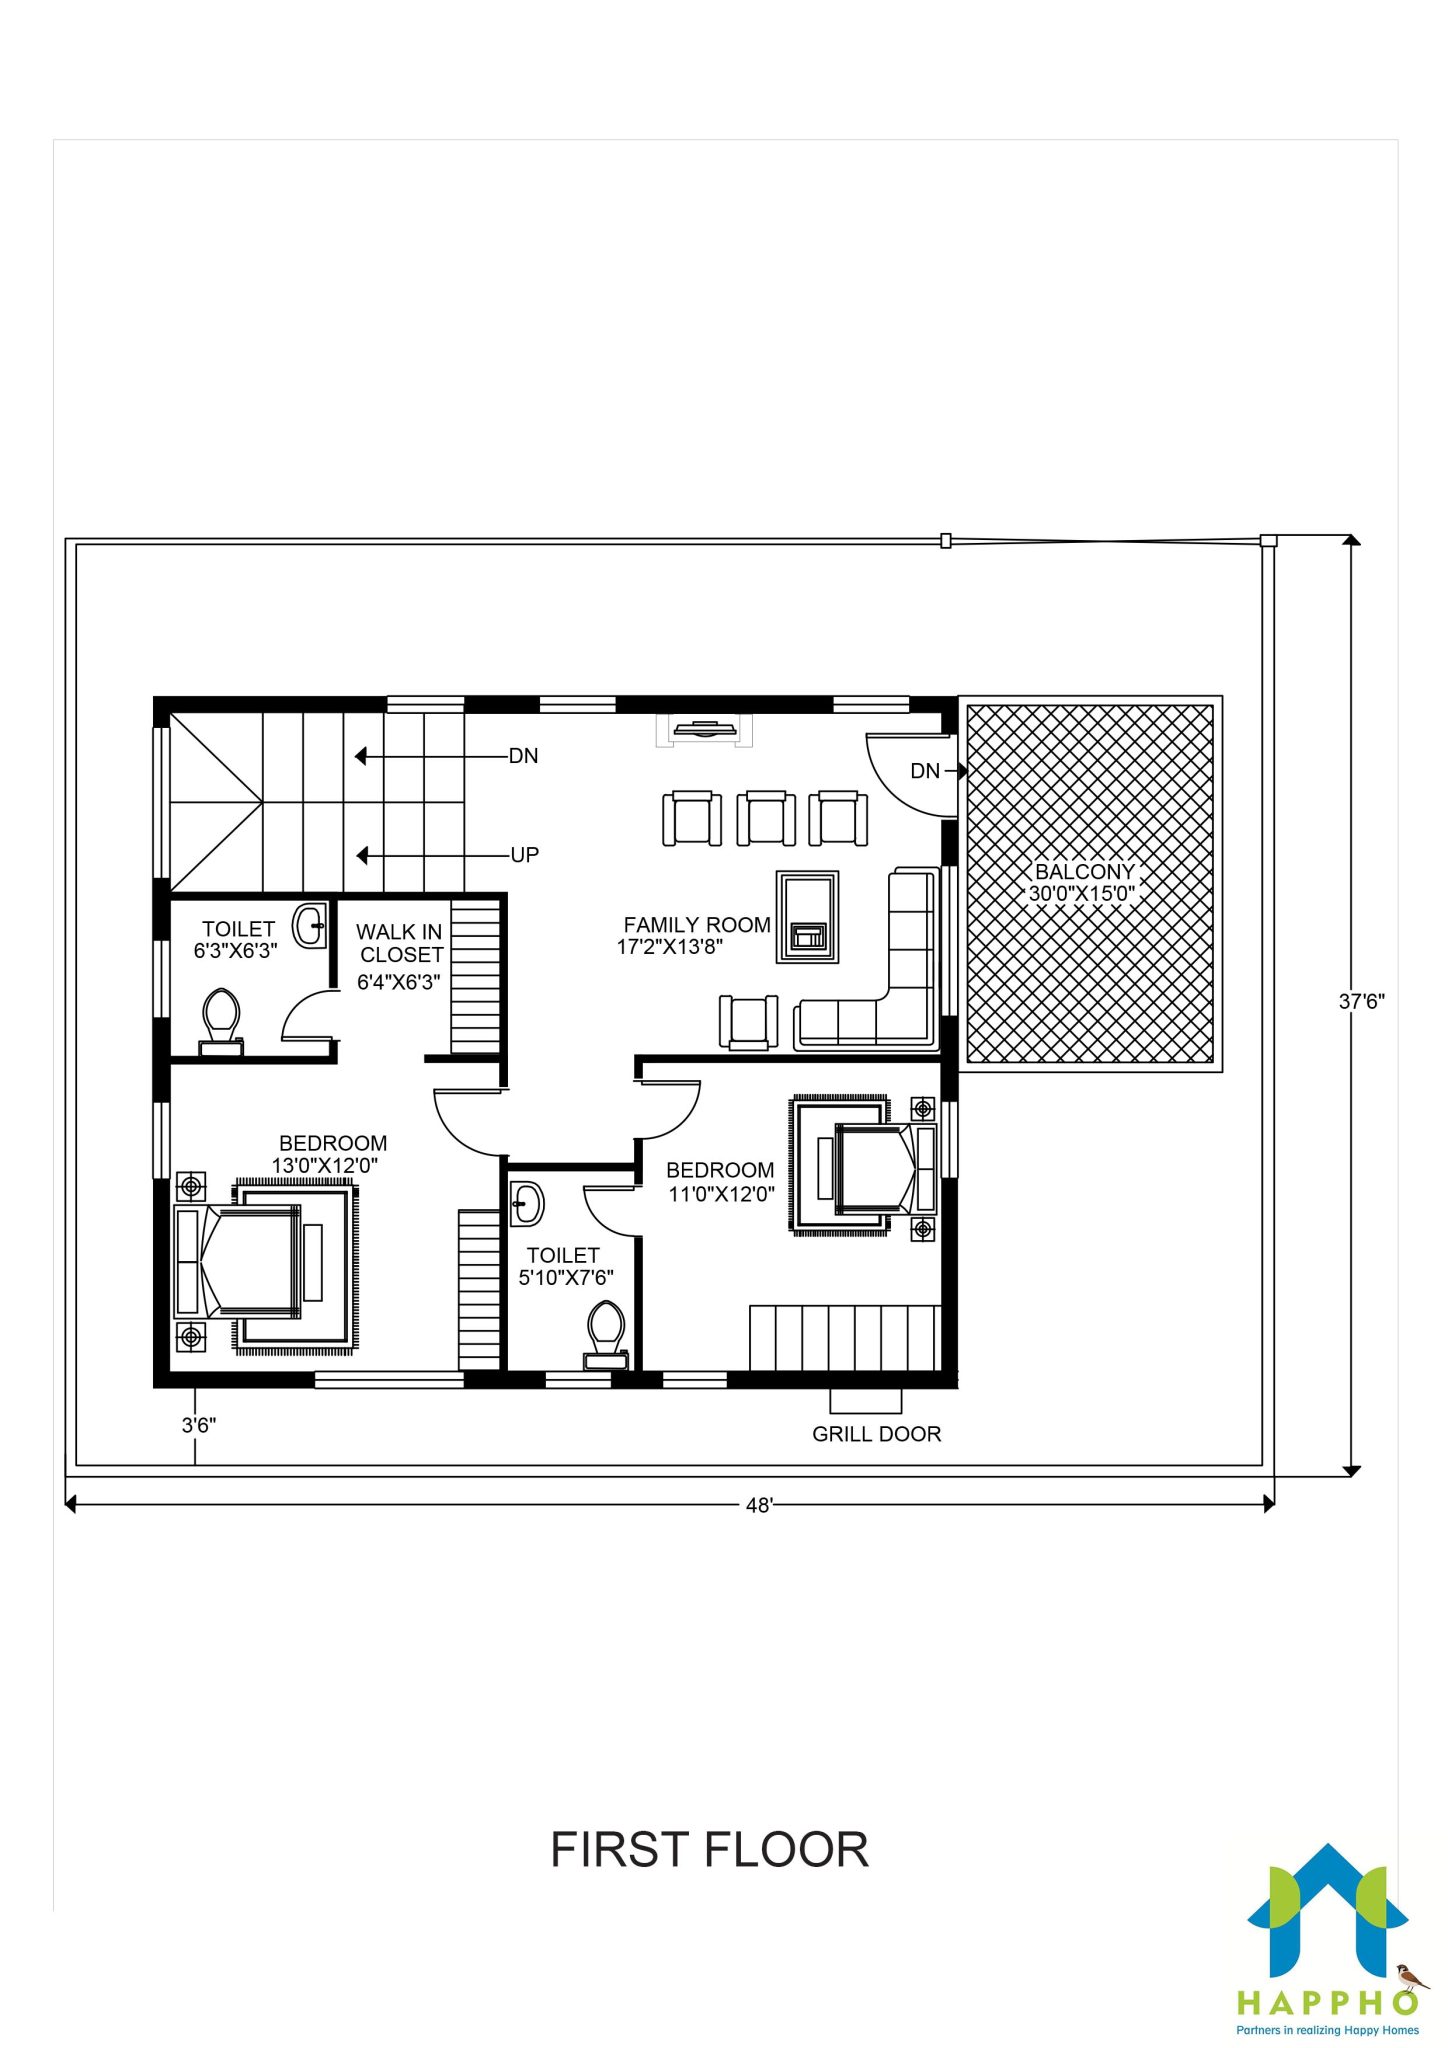 First floor plan, 1910 square feet floor plan, 3 Bhk floor plan, Duplex floor plan